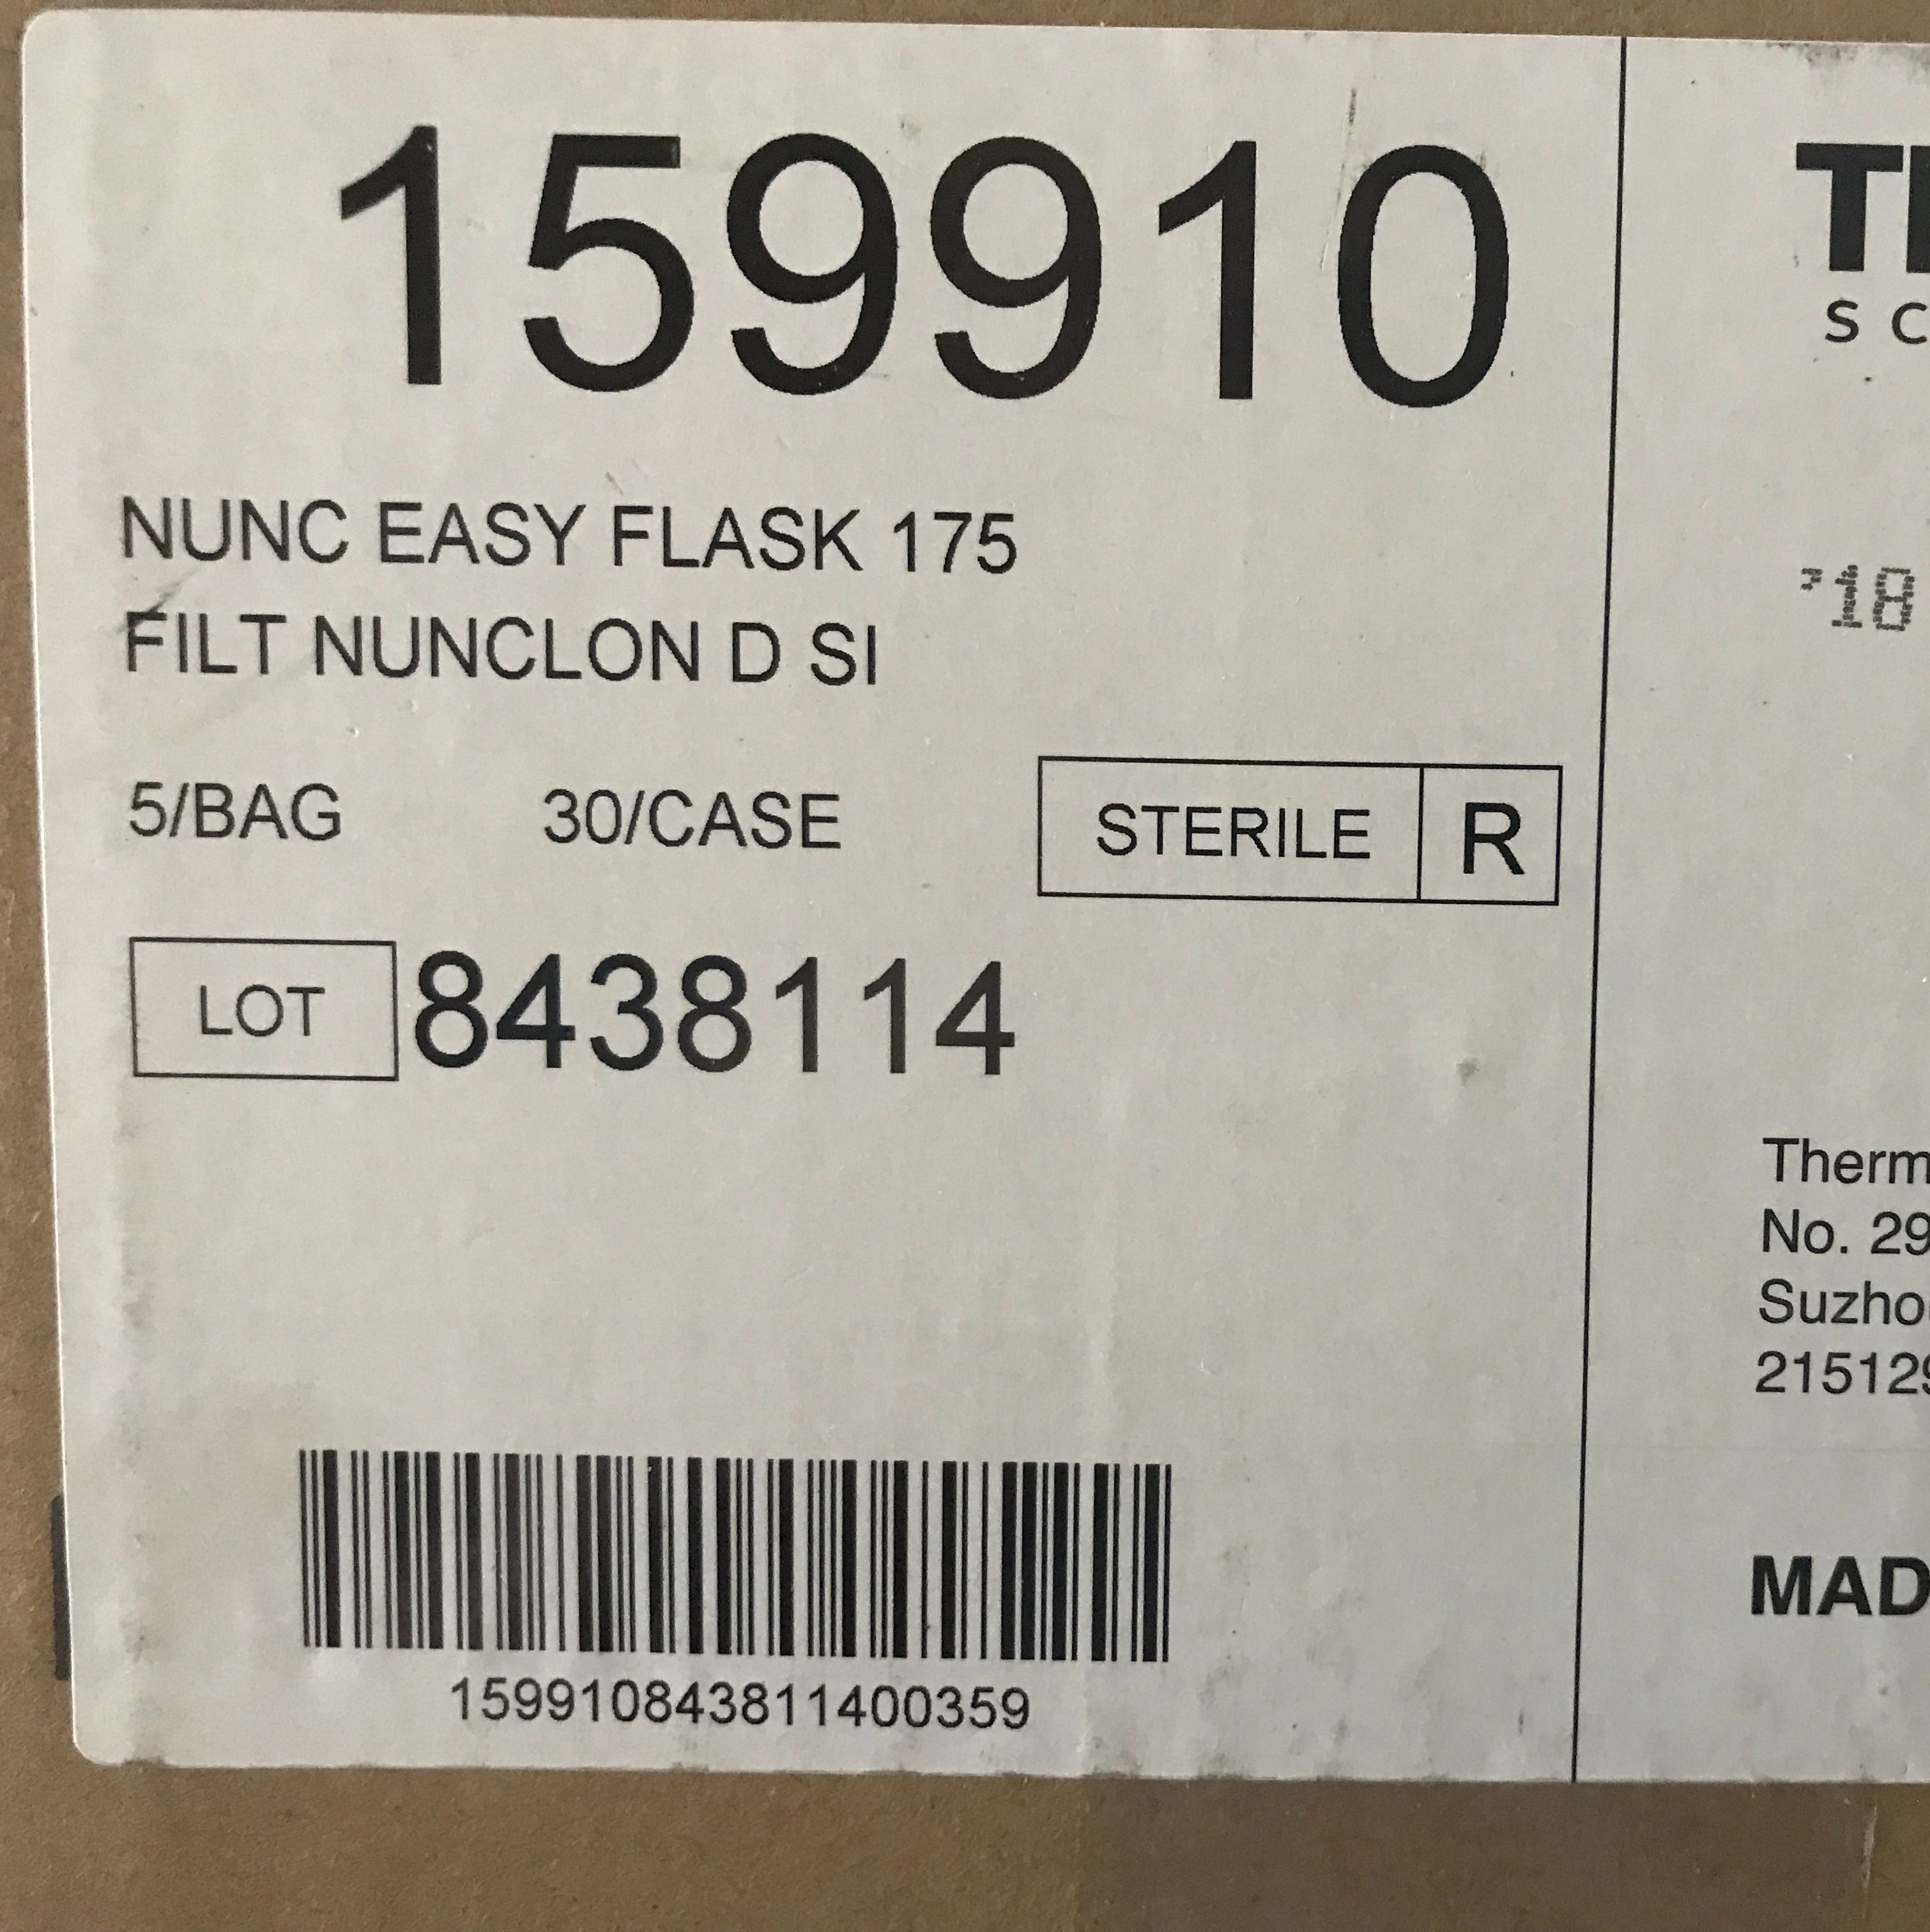 Nunc货号159910现货175cm²细胞培养瓶13611631389上海睿安生物